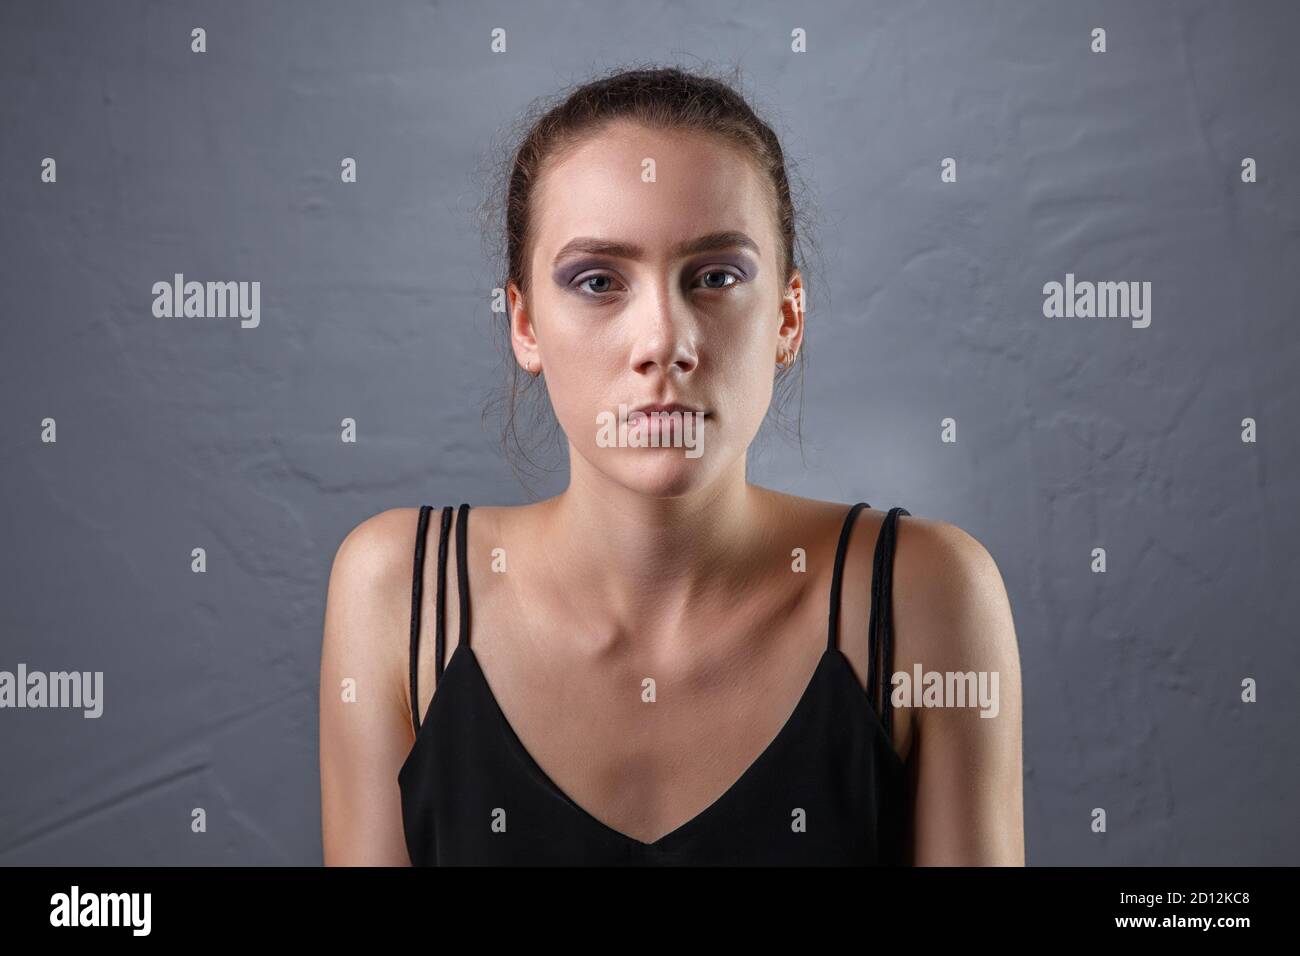 Immagine di giovane donna con trucco incompiuto su sfondo grigio Foto Stock